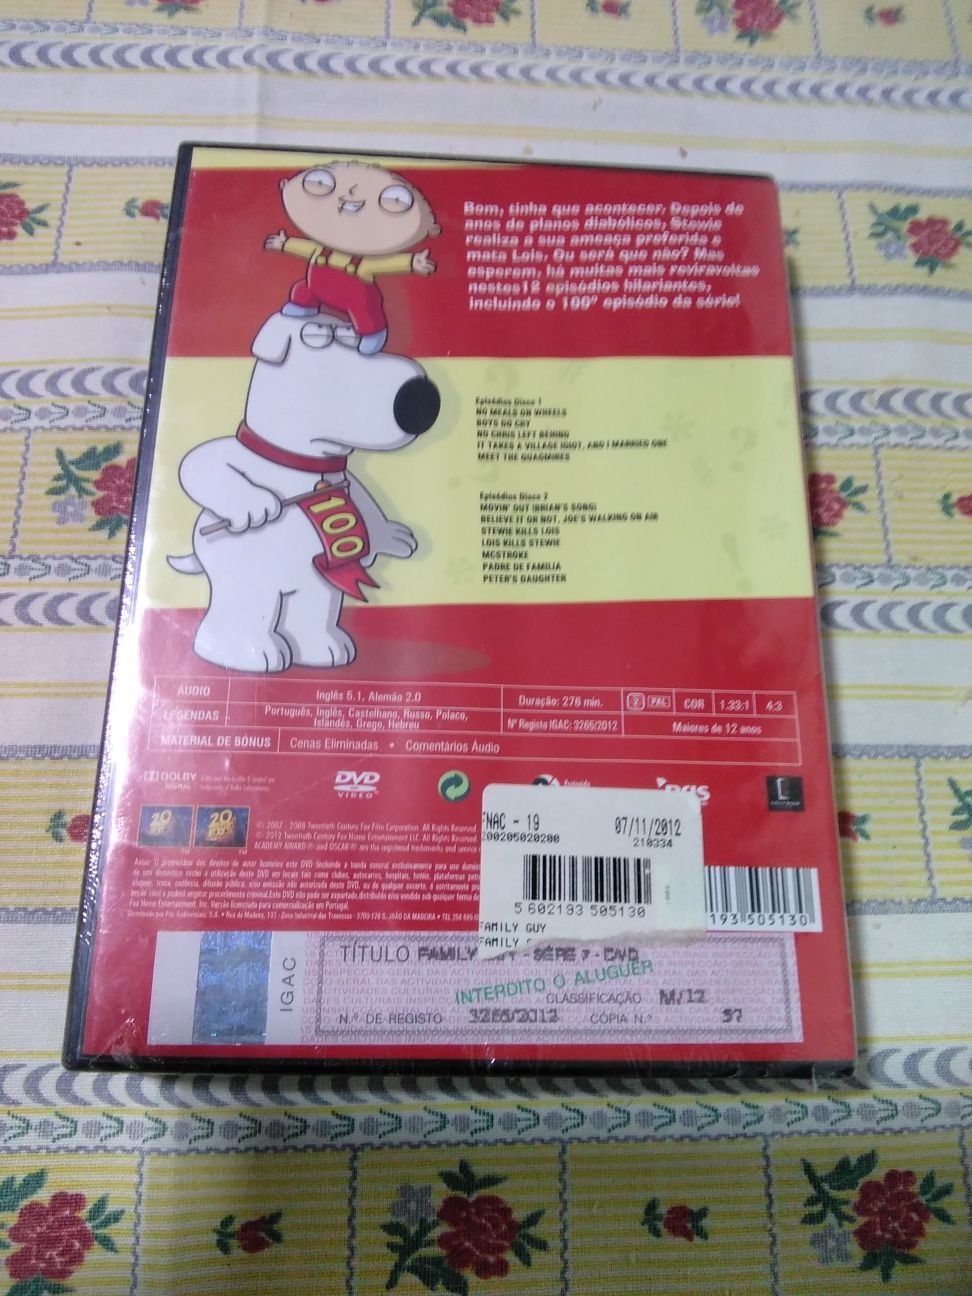 DVD - Family Guy